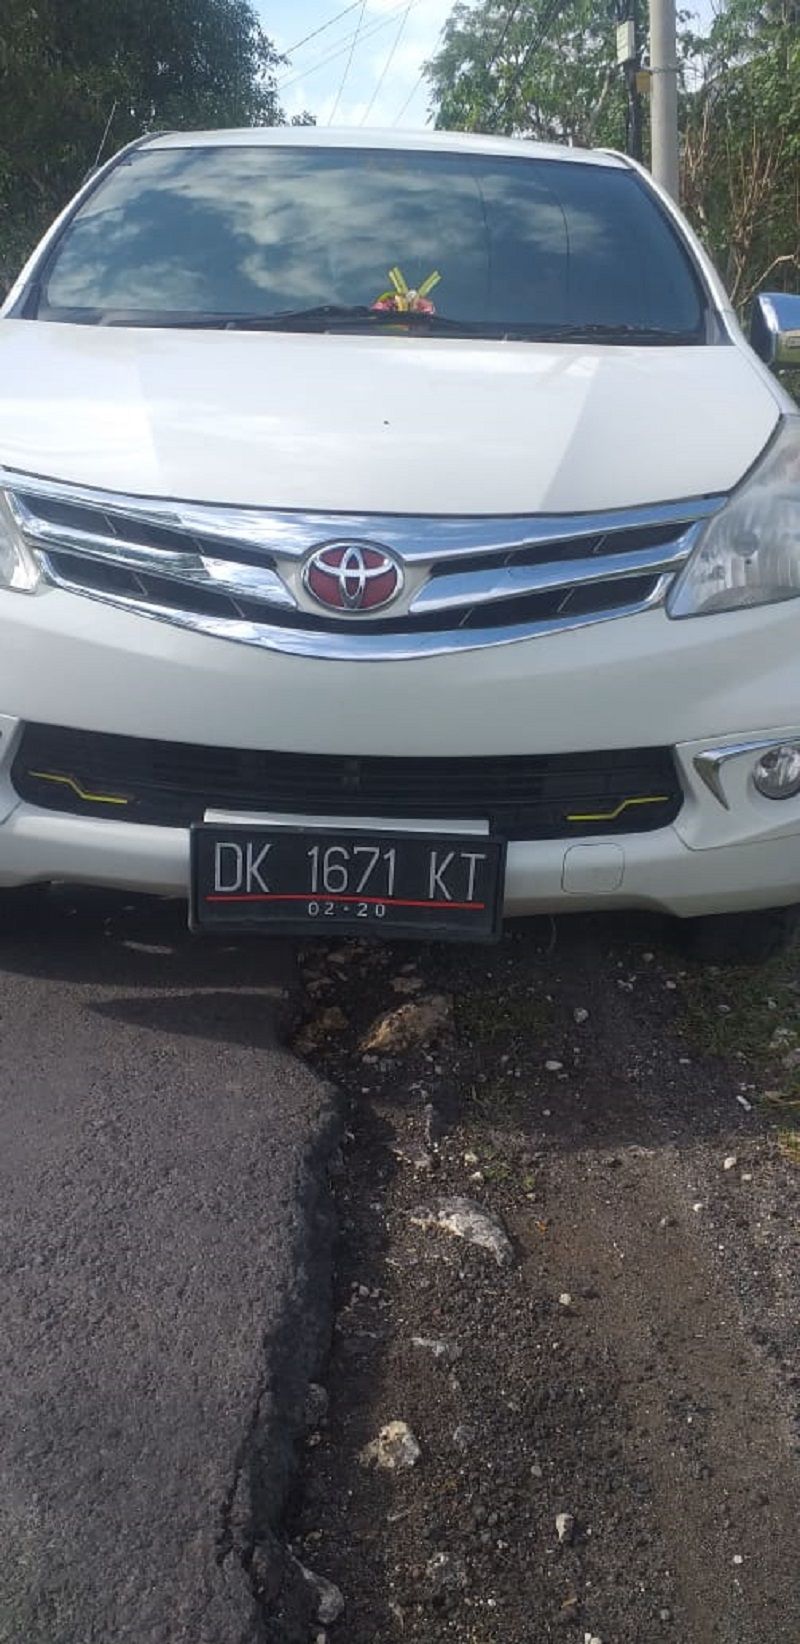 Mobil yang ikut diamankan oleh Reskrim Polsek Nusa Penida, Klungkung Bali untuk penyelidikan lebih lanjut kasus pencurian belasan aki oleh seorang pelajar